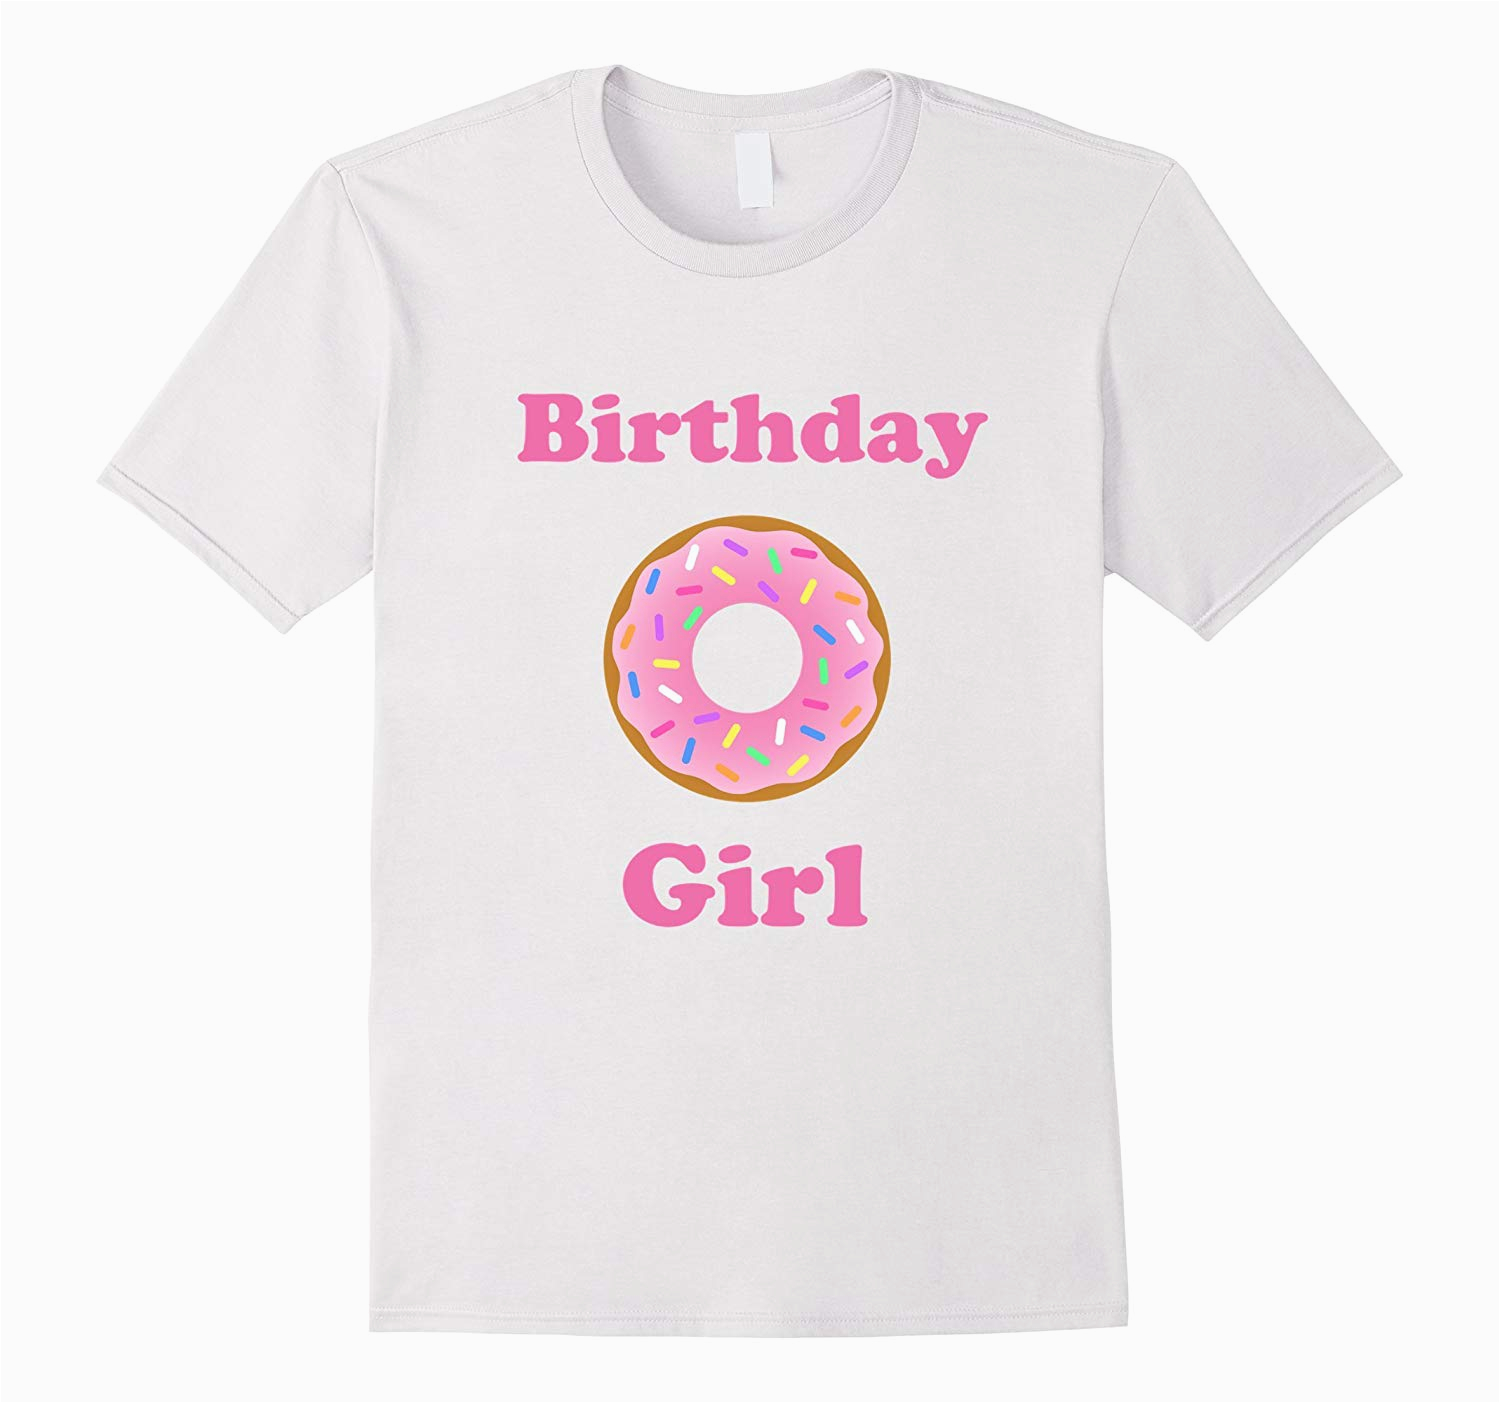 birthday girl doughnut shirt for kids